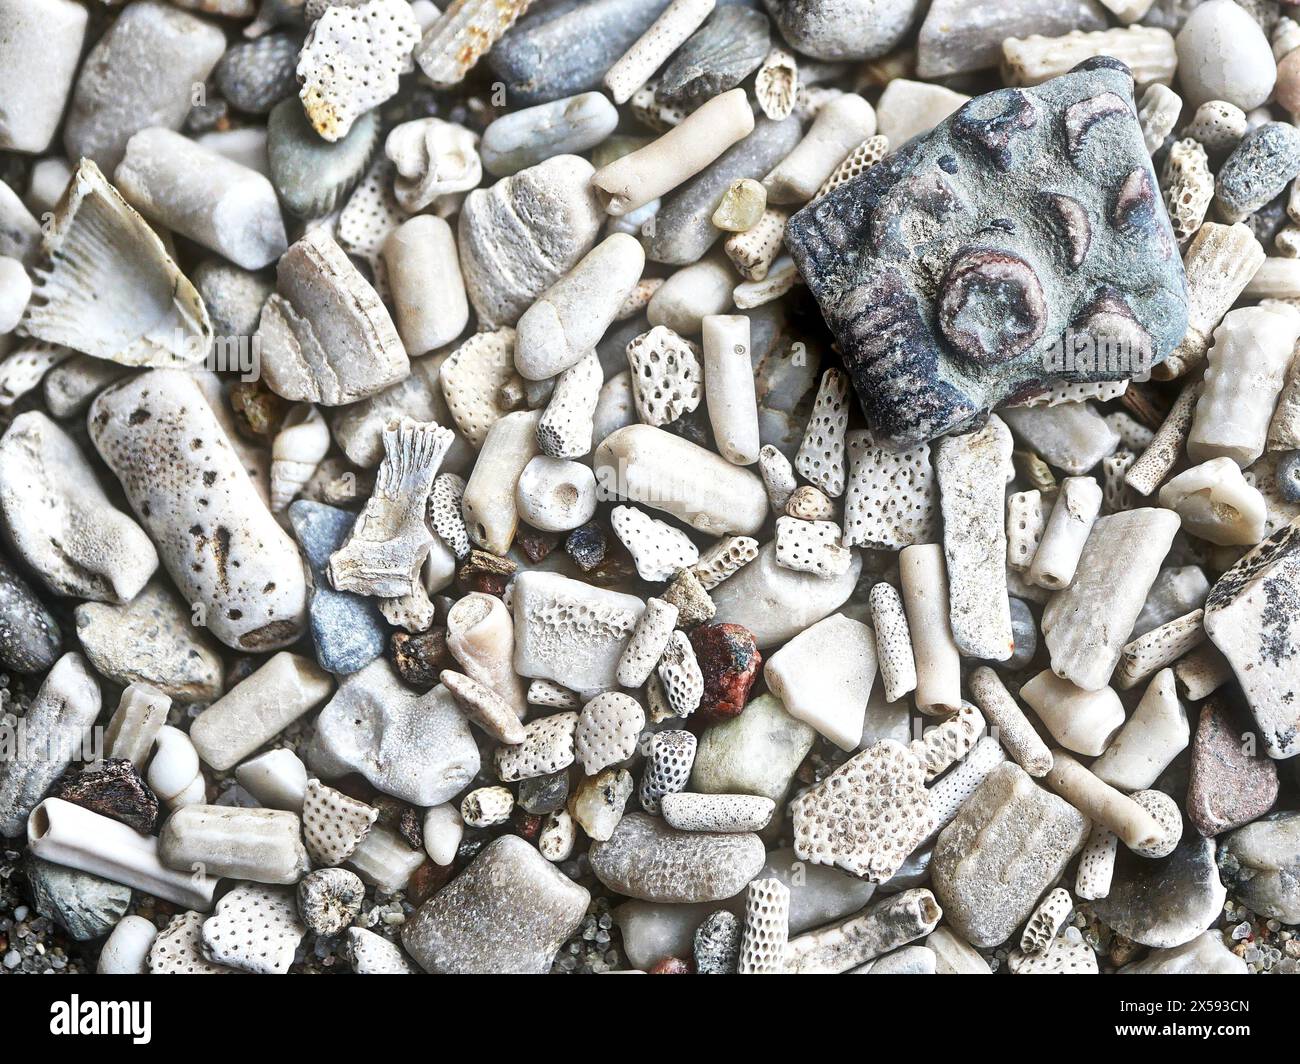 Petites tiges de lis fossilisées, épines d'oursins et restes pétrifiés de la région de la mer Baltique. Objets de collection idéaux et arrière-plans captivants Banque D'Images